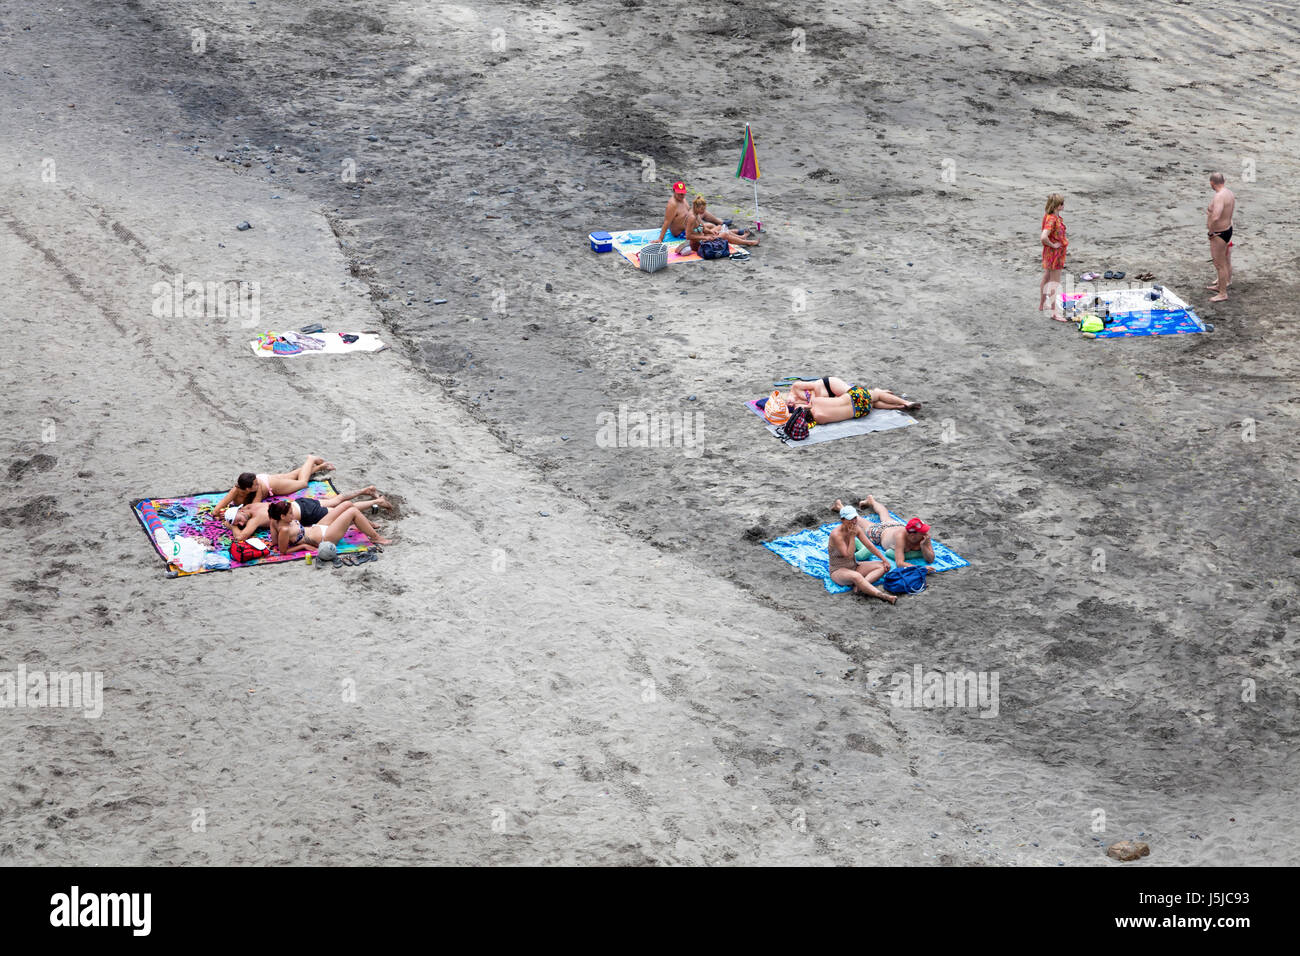 Les gens en train de bronzer sur une plage volcanique de Tenerife, Espagne Banque D'Images